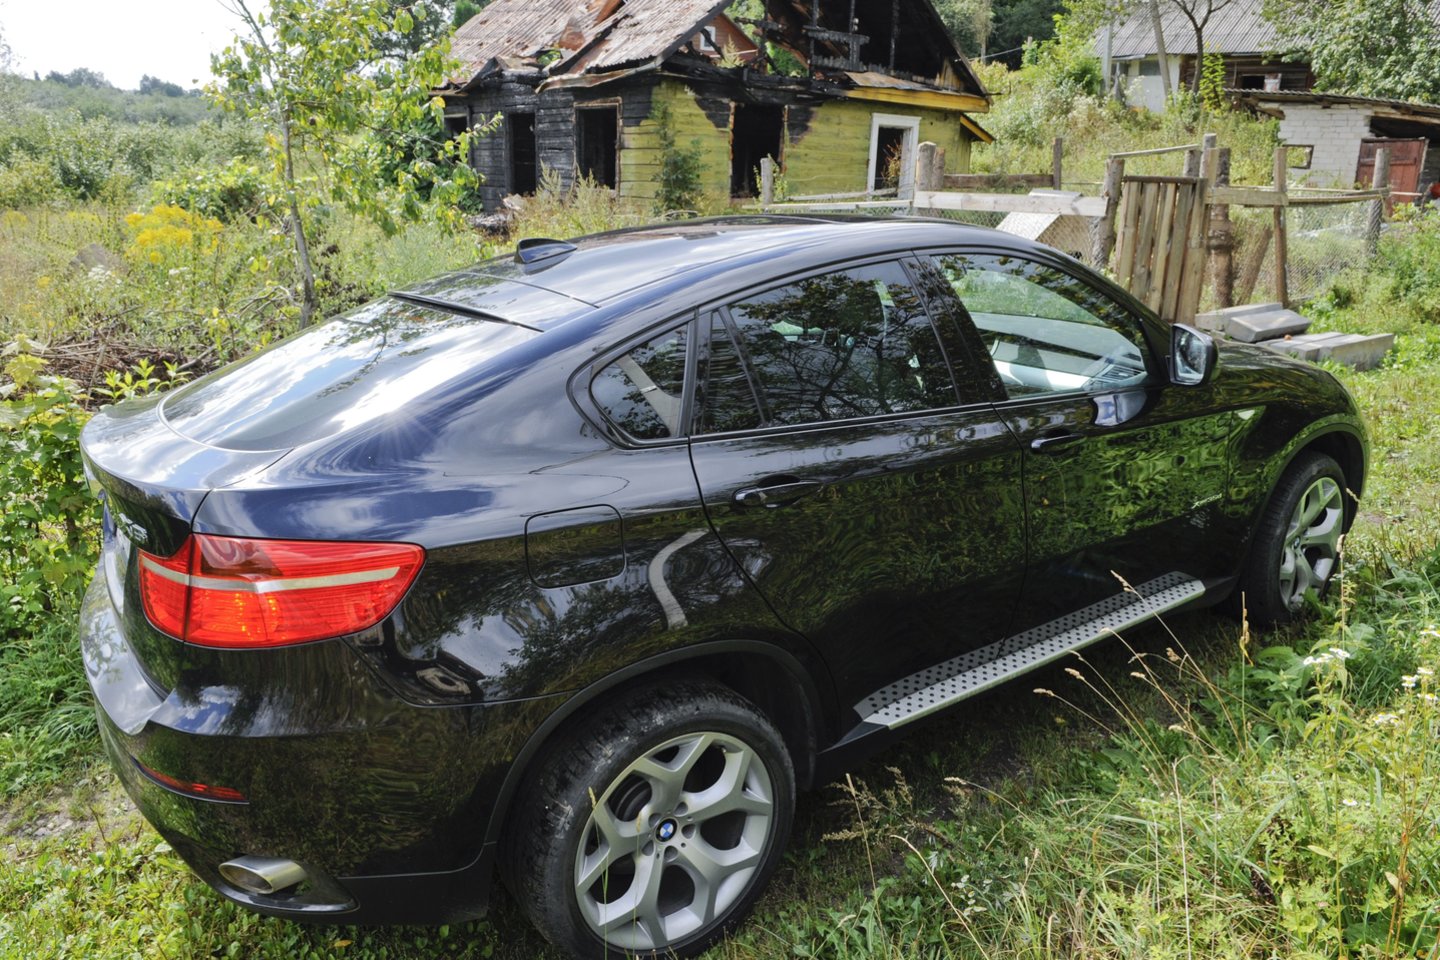  Kauno krašte vagys pagrobė du prabangius automiobilius. Vienas jų, BMW X6, priklauso emigrantui, atvykusiam pas artimuosius.<br> V.Ščiavinsko asociatyvioji nuotr.